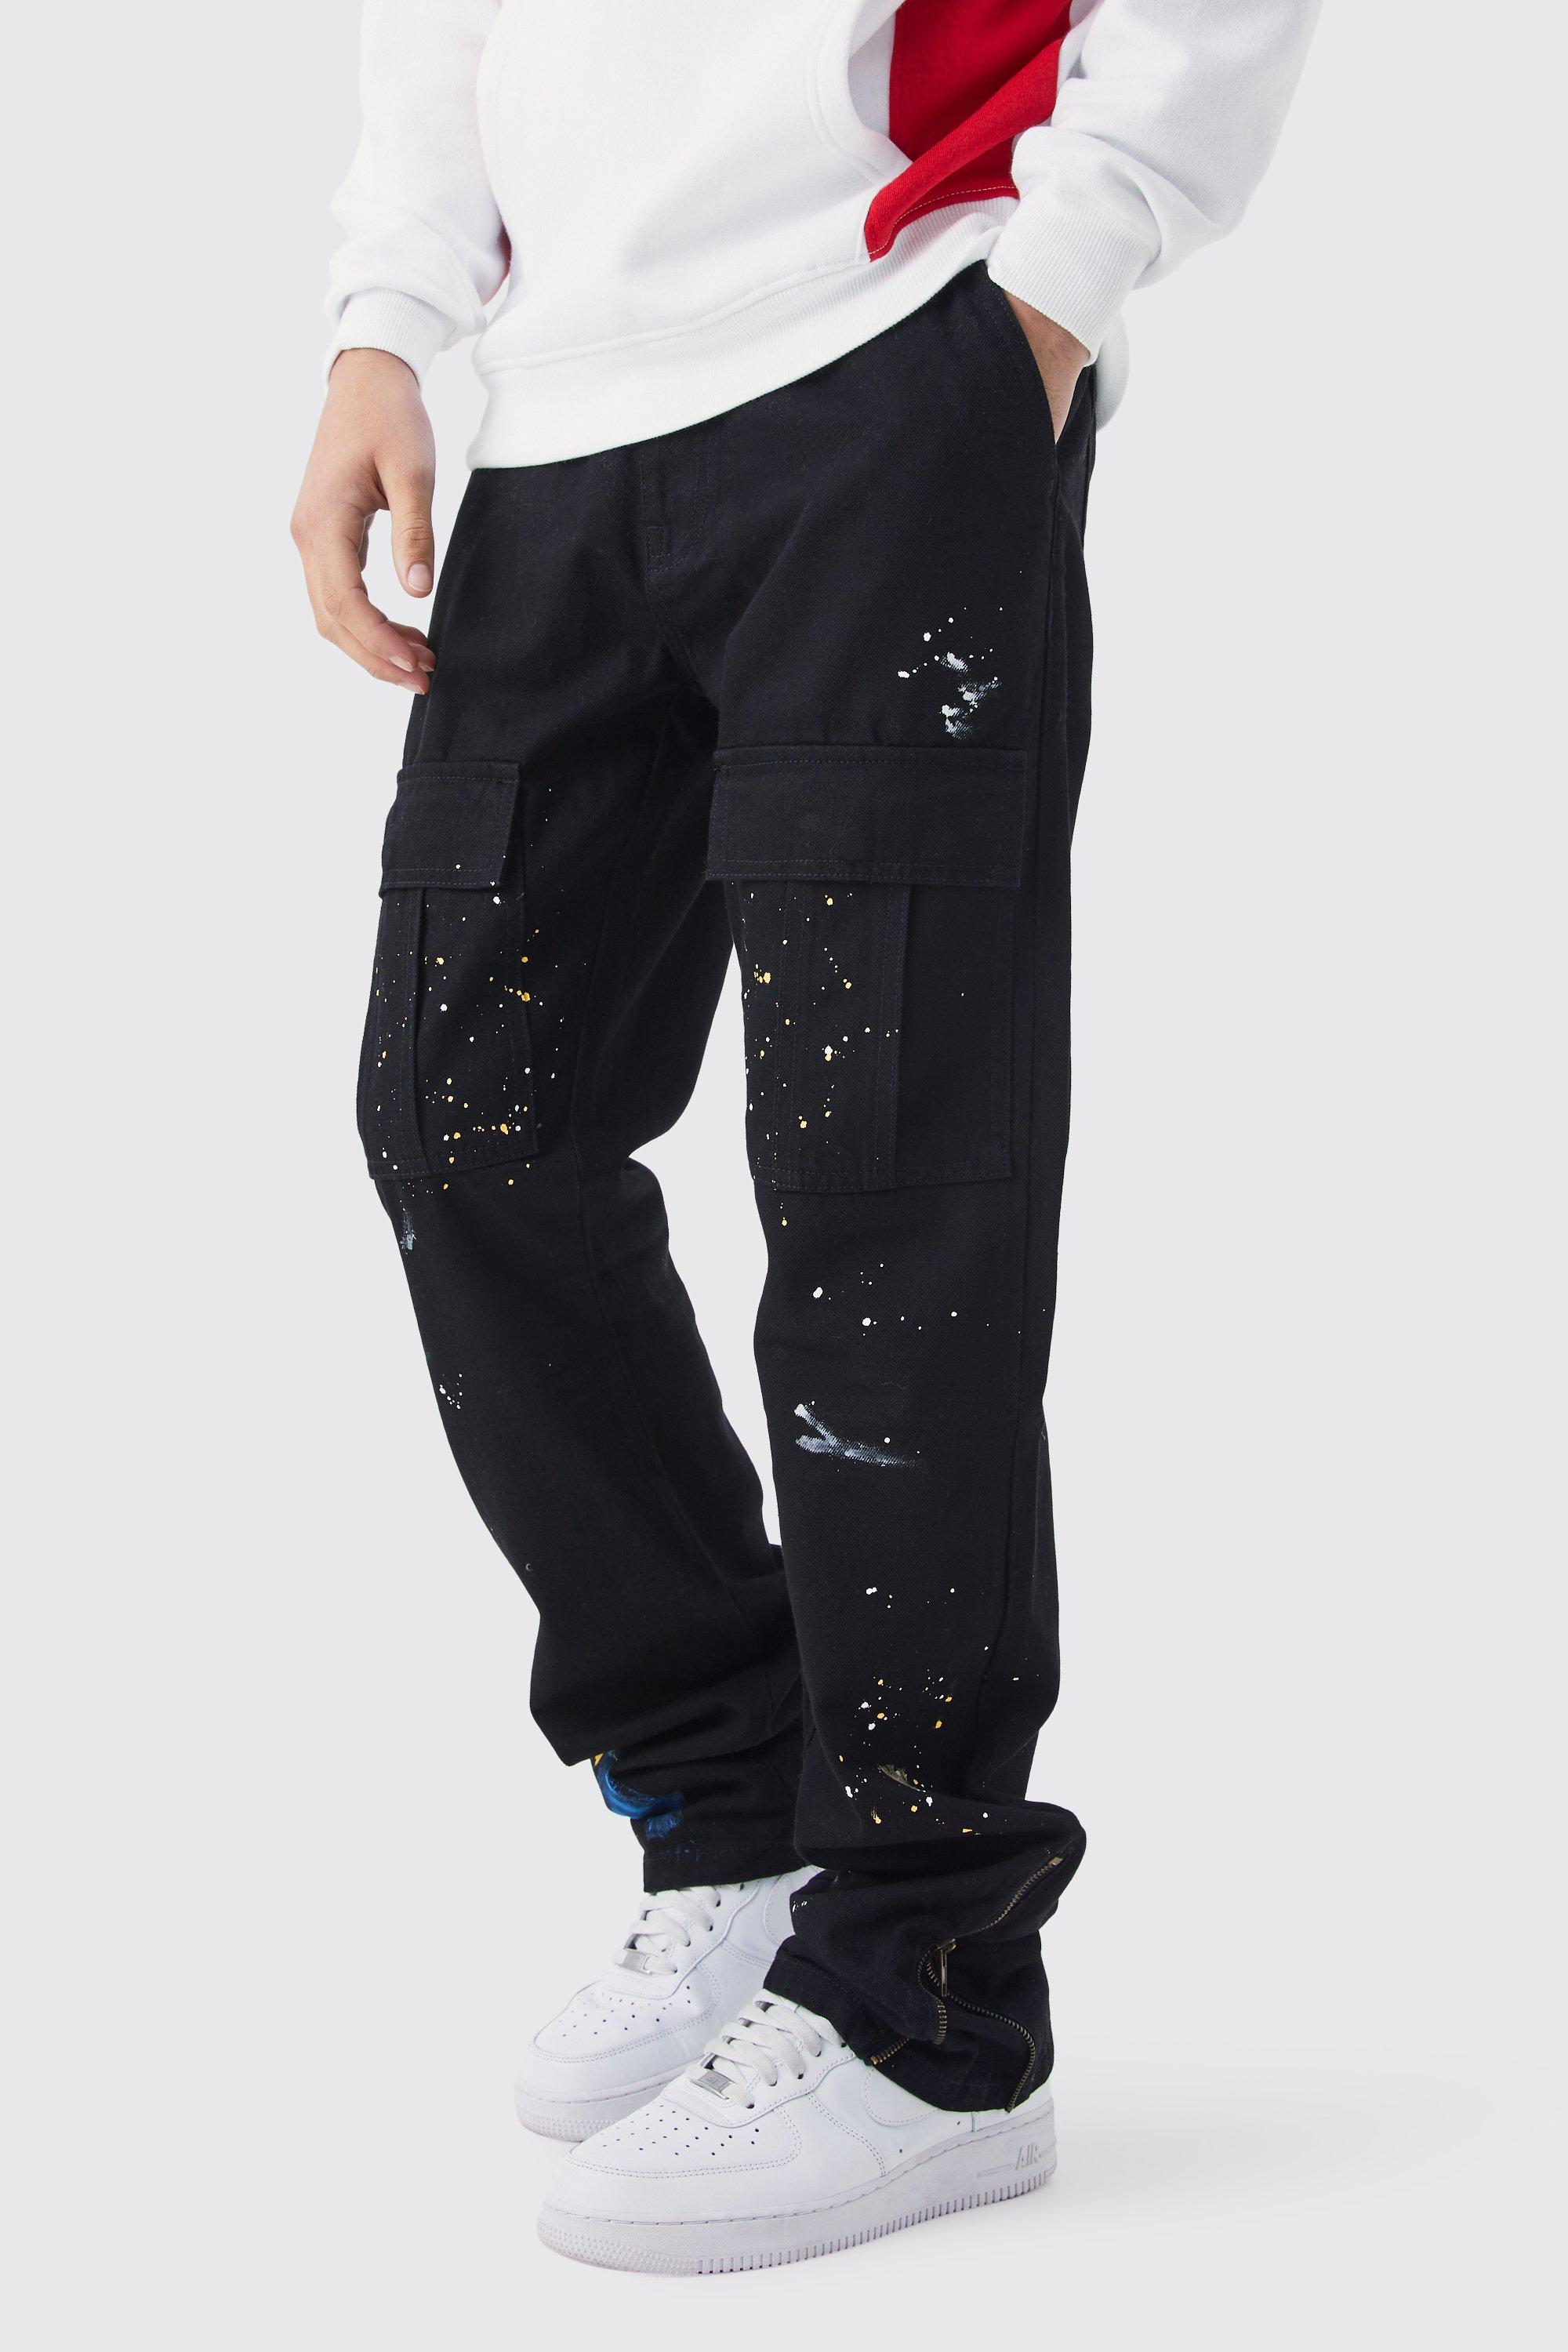 Image of Pantaloni Cargo Slim Fit con zip, pieghe sul fondo e schizzi di colore, Nero